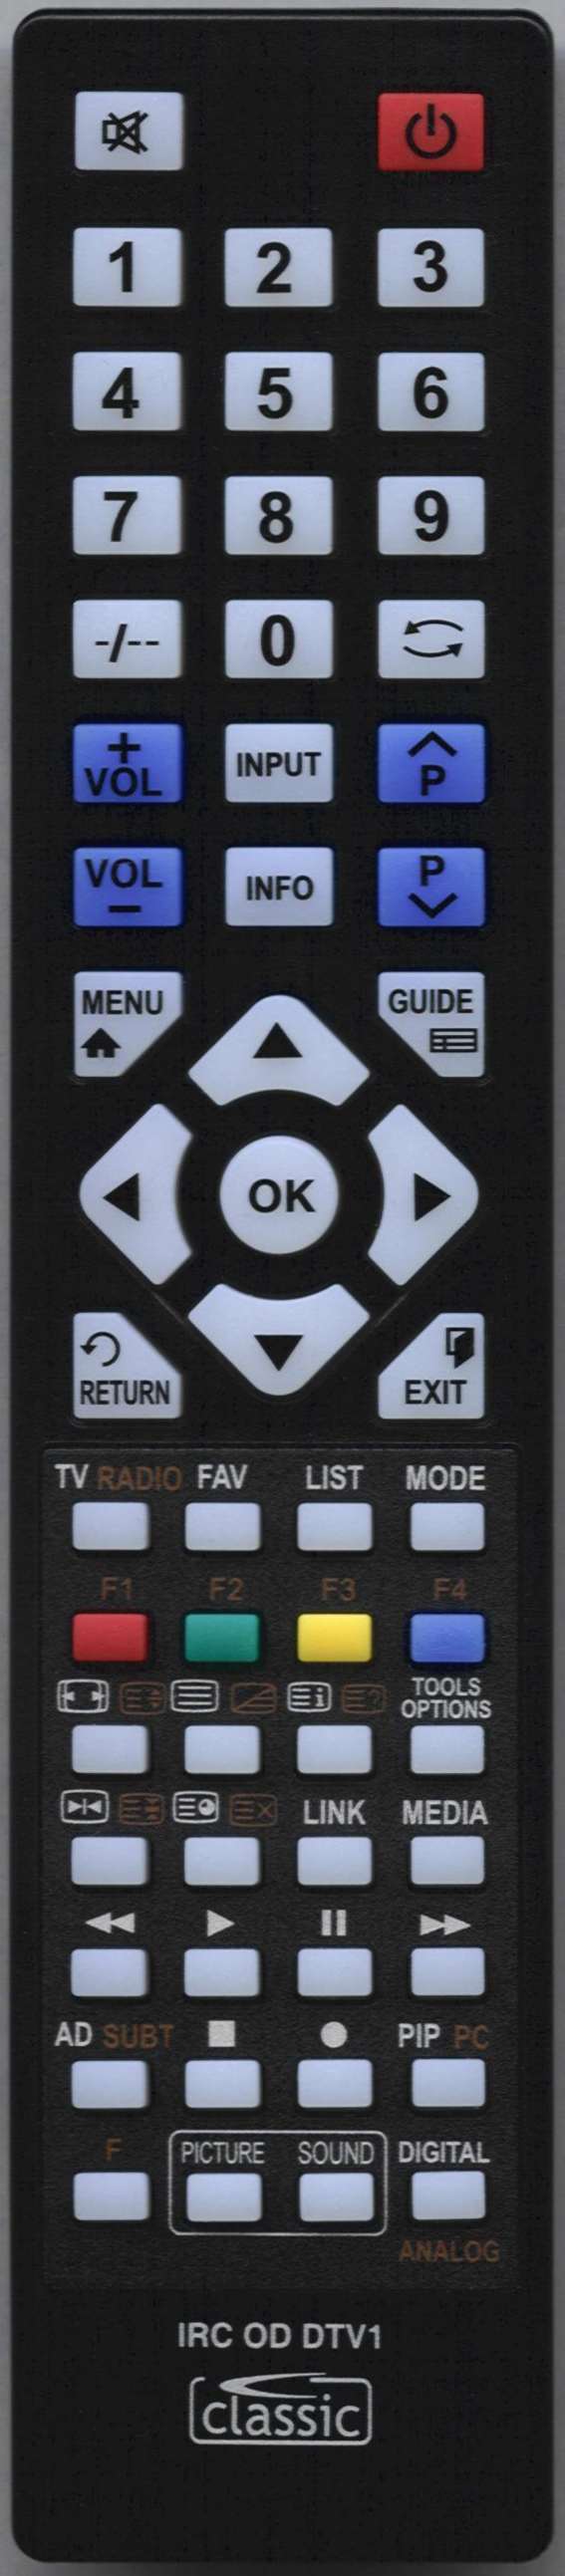 SEG CT 1901A Remote Control